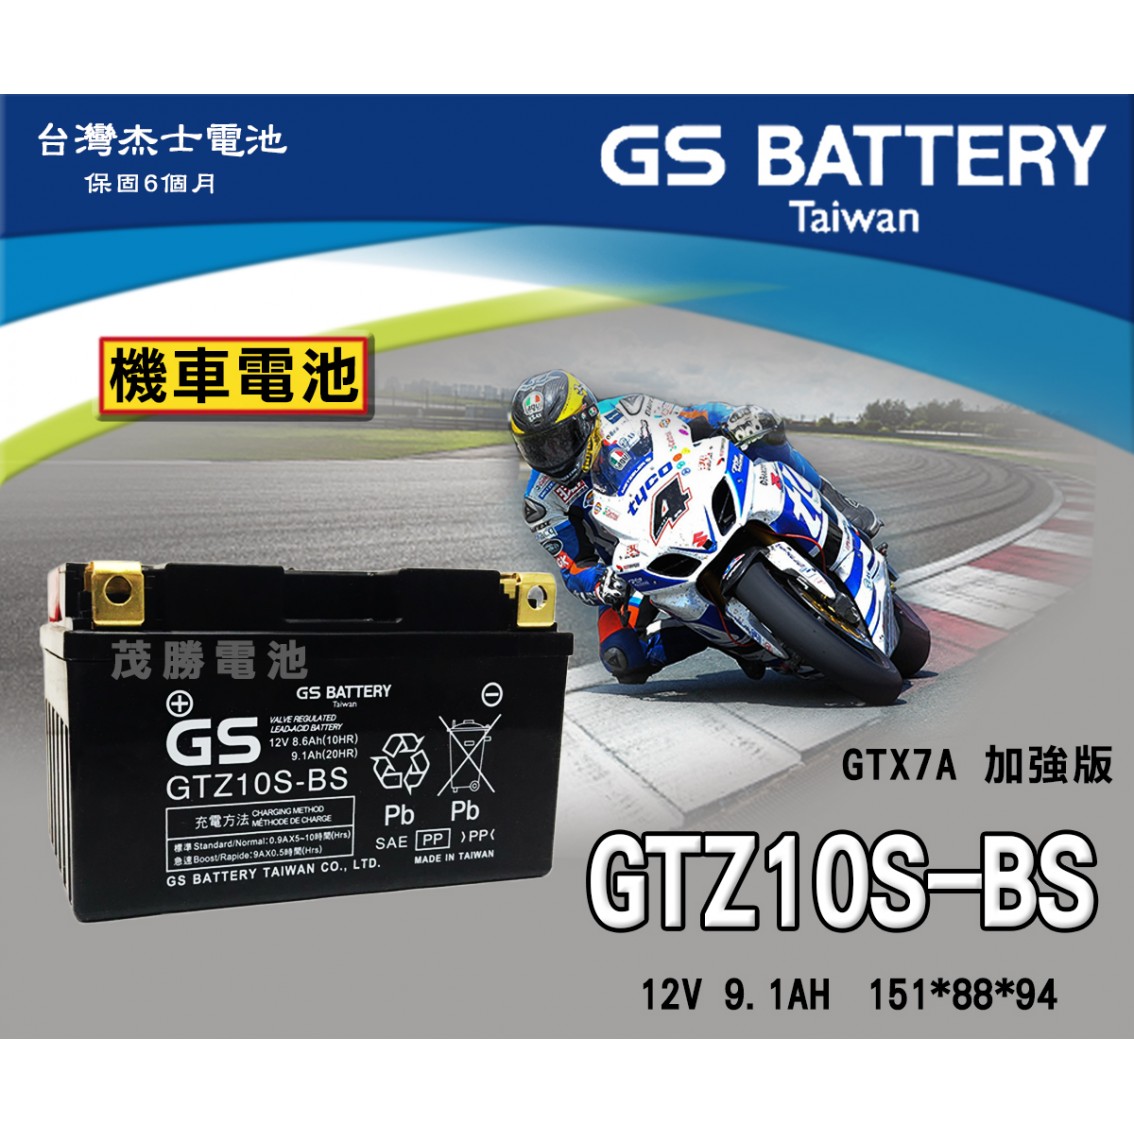 GTZ10S-BS